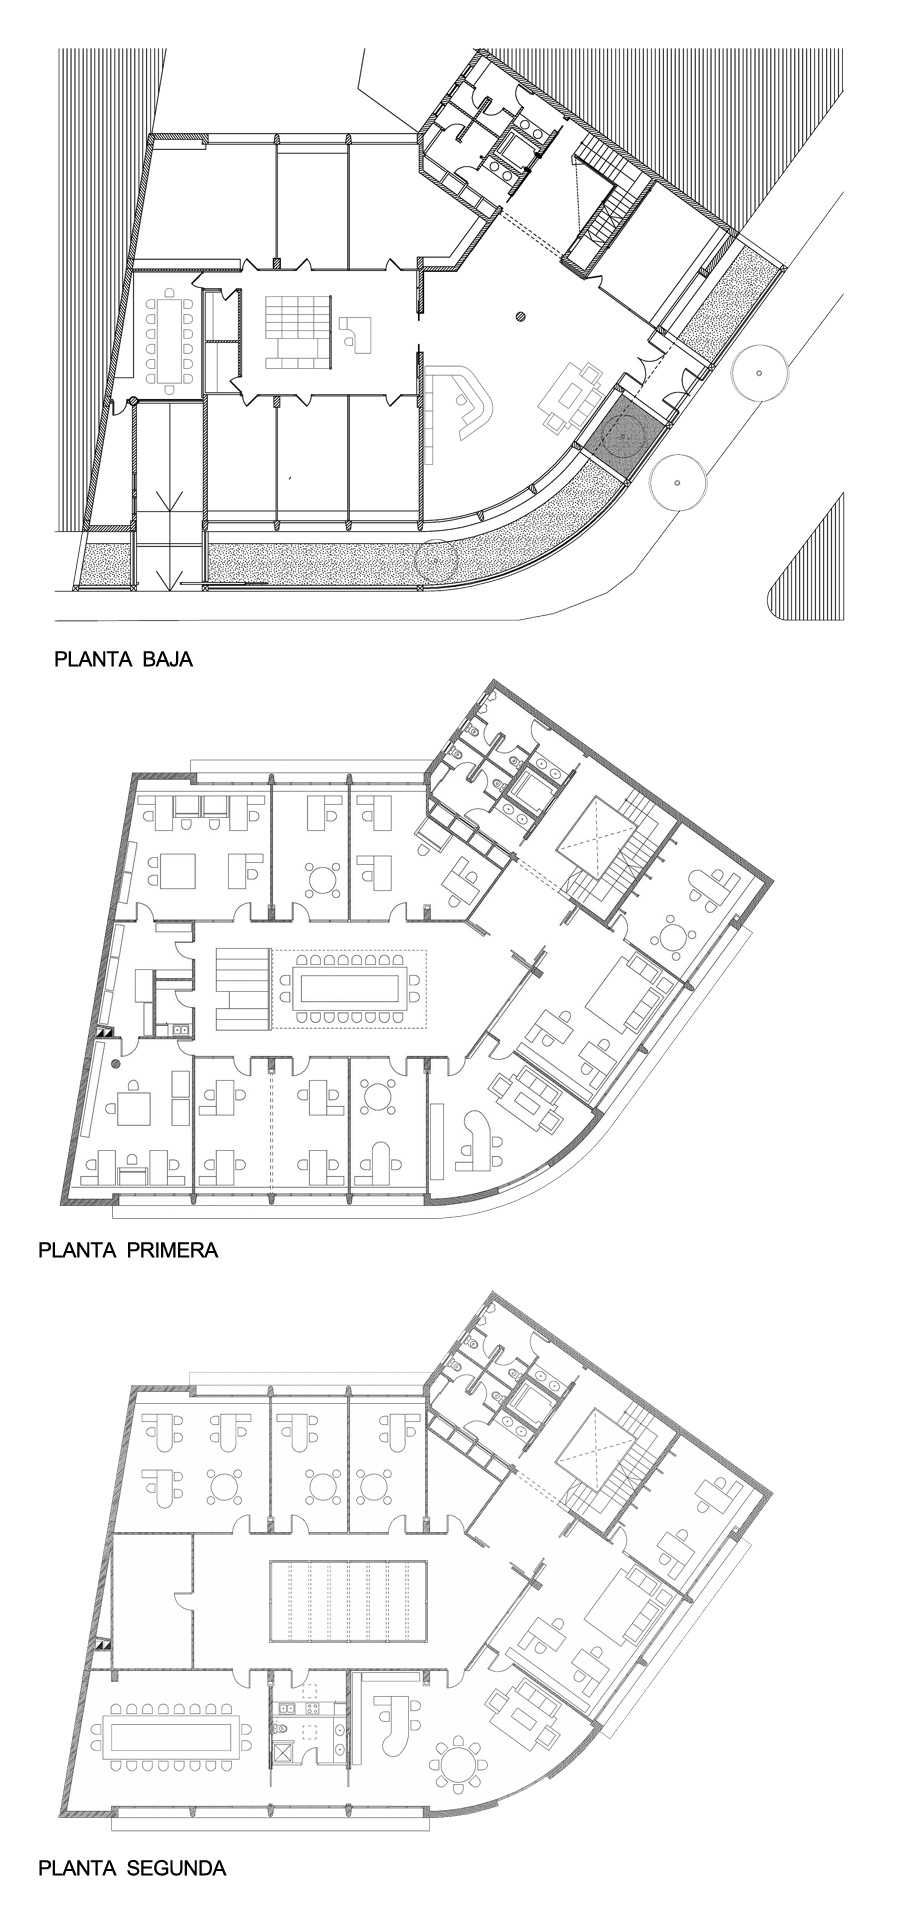 Correa + Estevez Arquitectura - Sede Gestur Tenerife Plantas.jpg